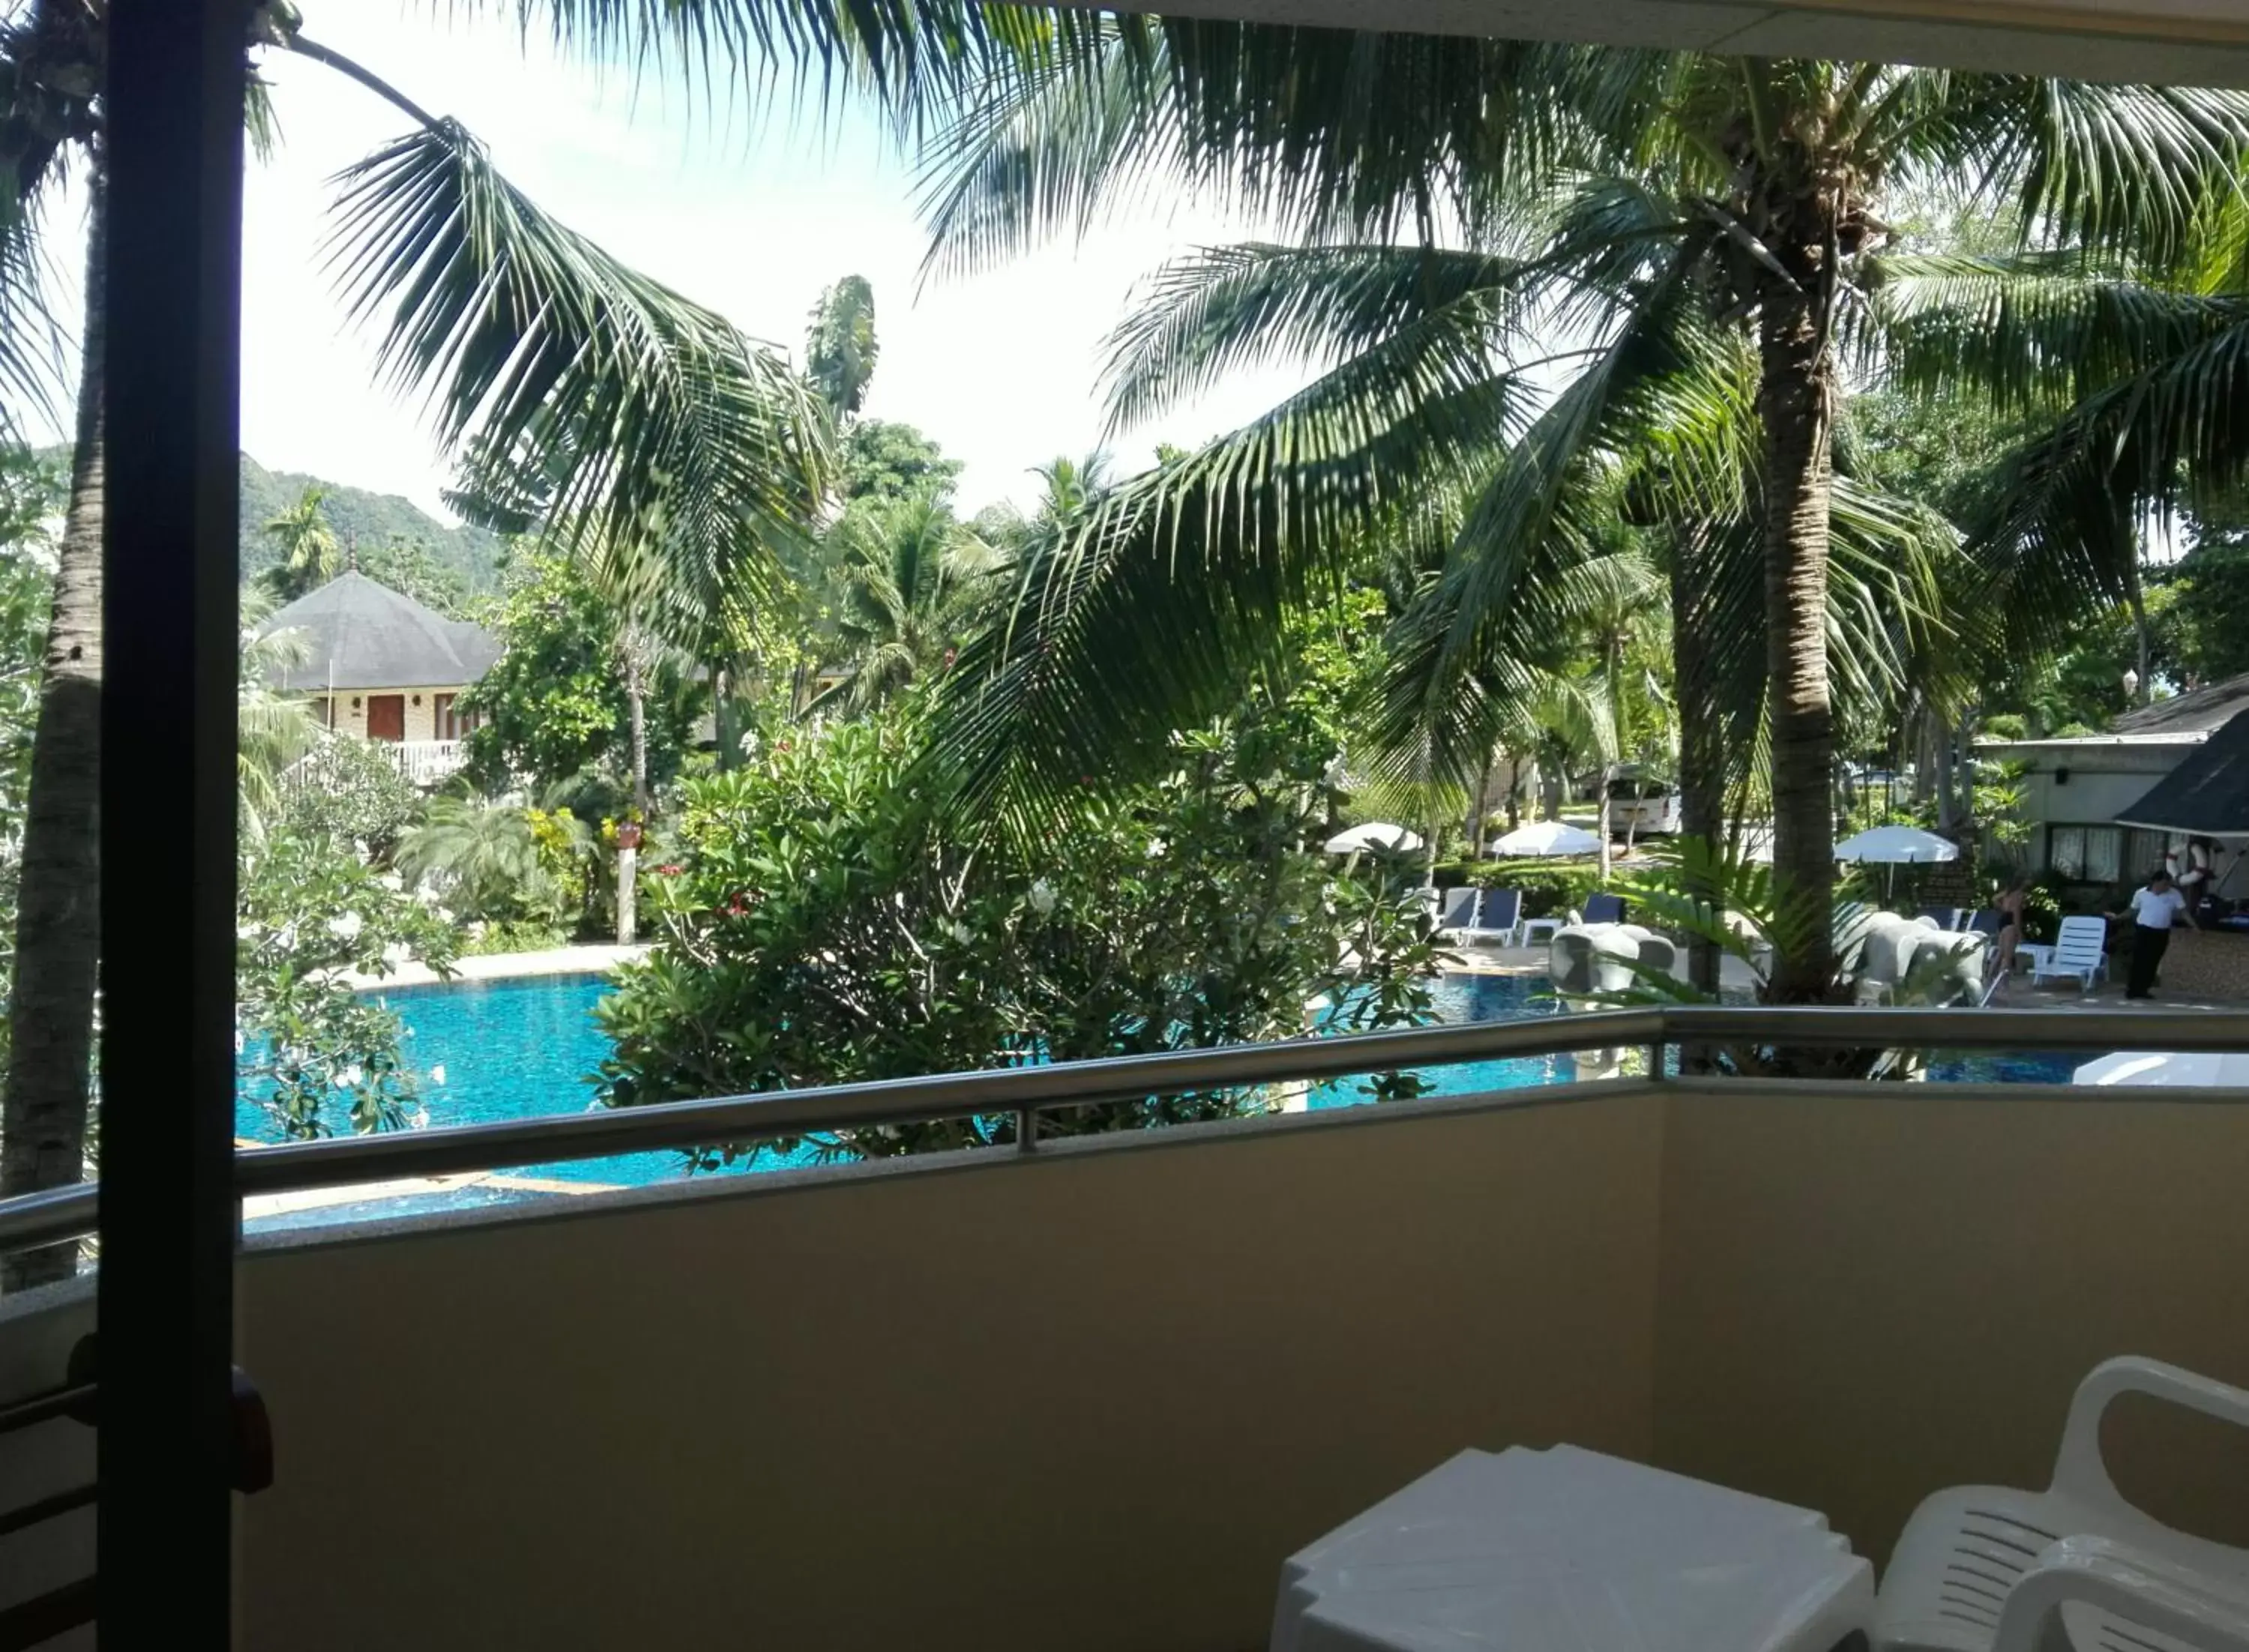 Pool View in Golden Beach Resort